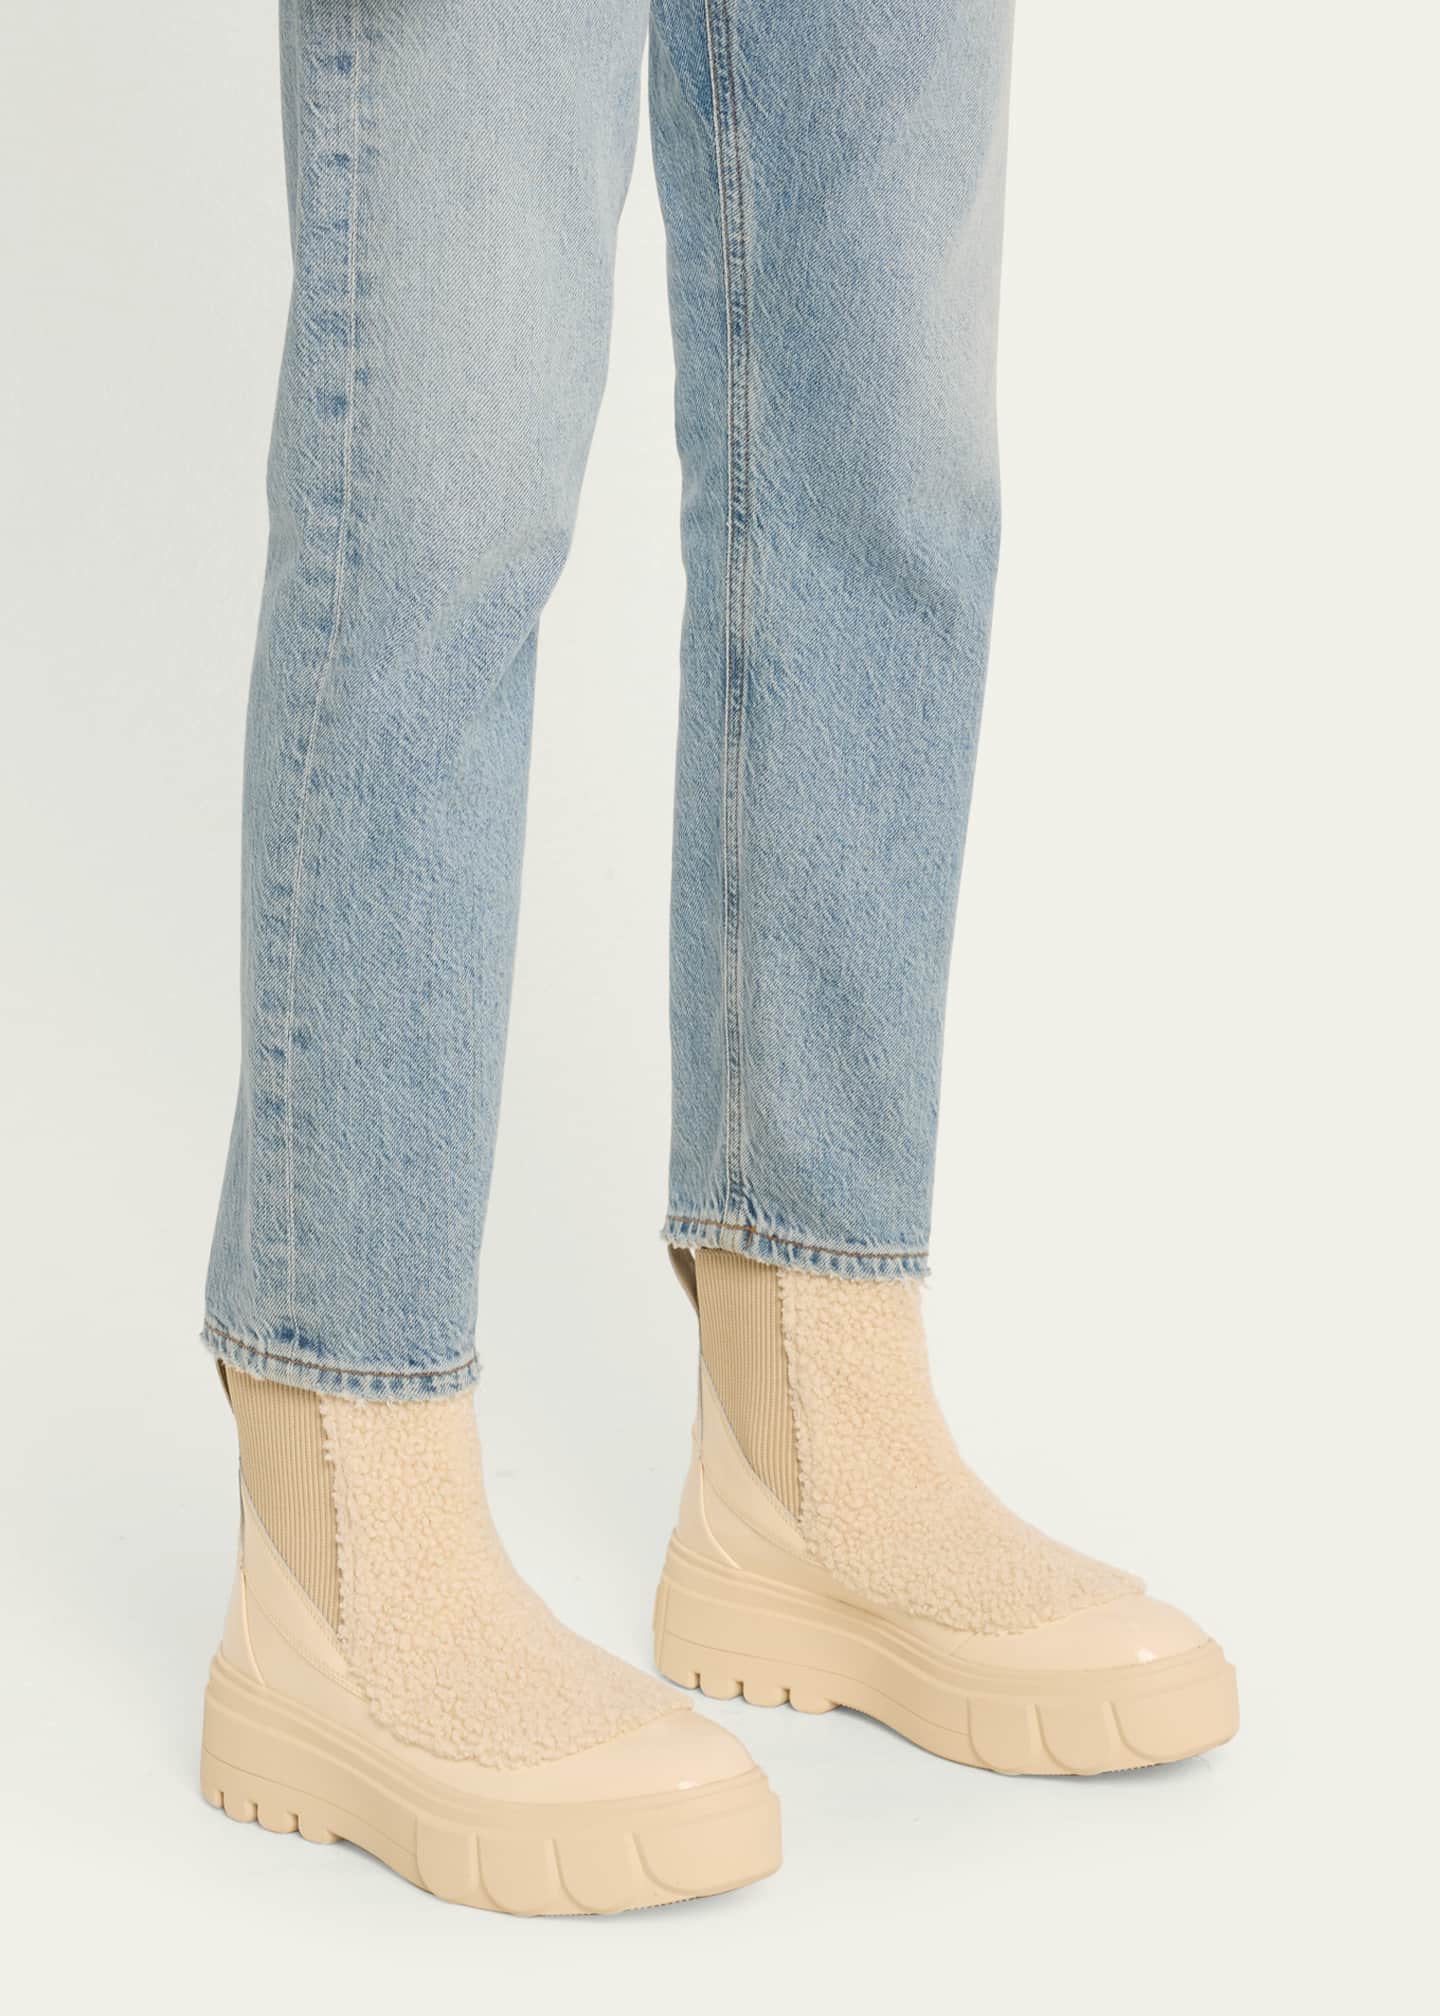 Sorel Caribou Cozy Chelsea Ankle Boots